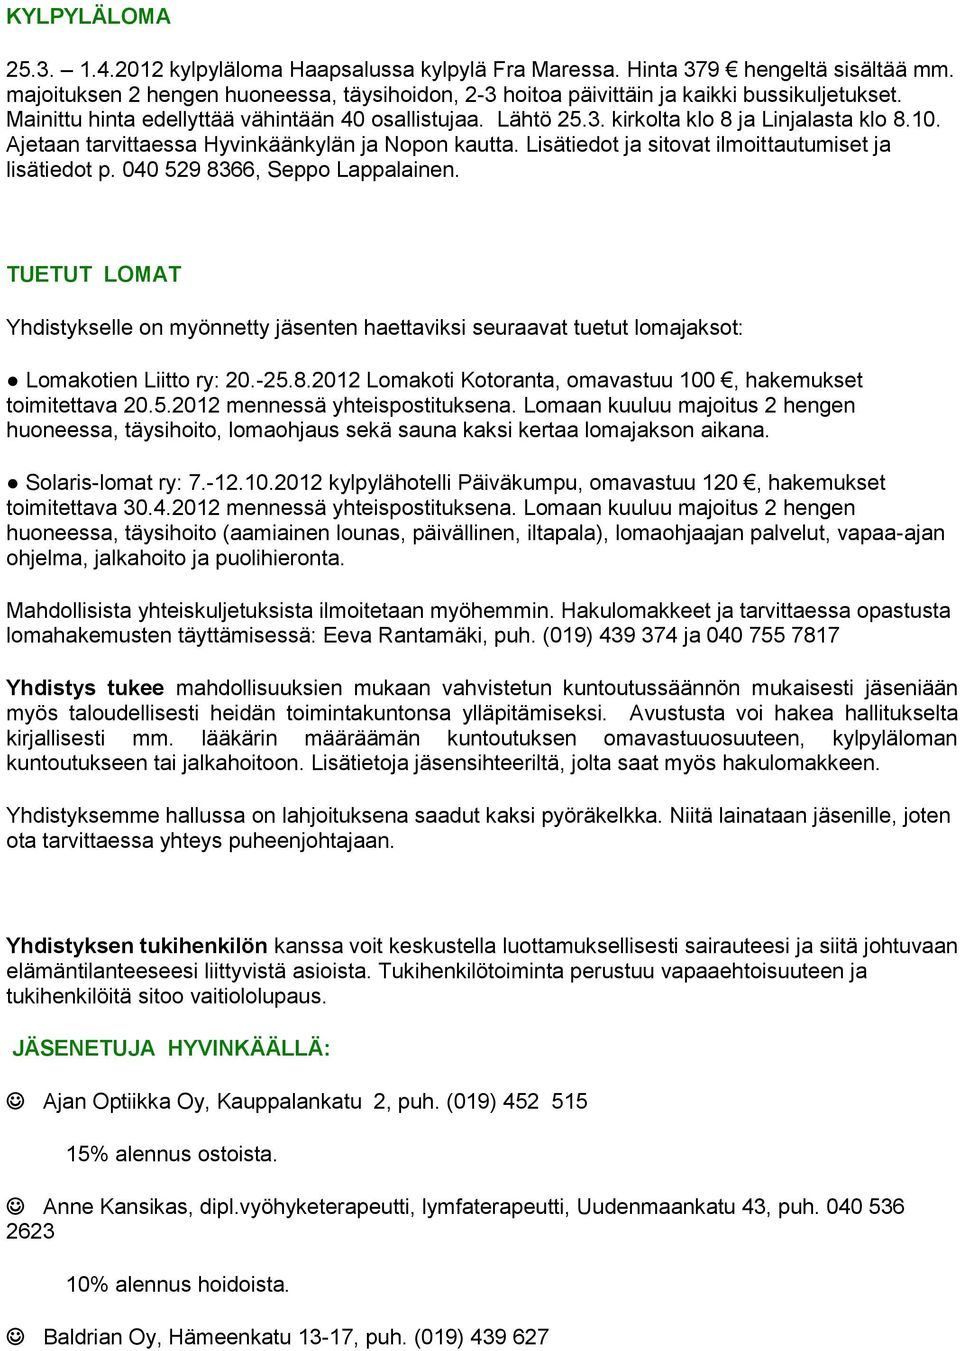 Lisätiedot ja sitovat ilmoittautumiset ja lisätiedot p. 040 529 8366, Seppo Lappalainen.